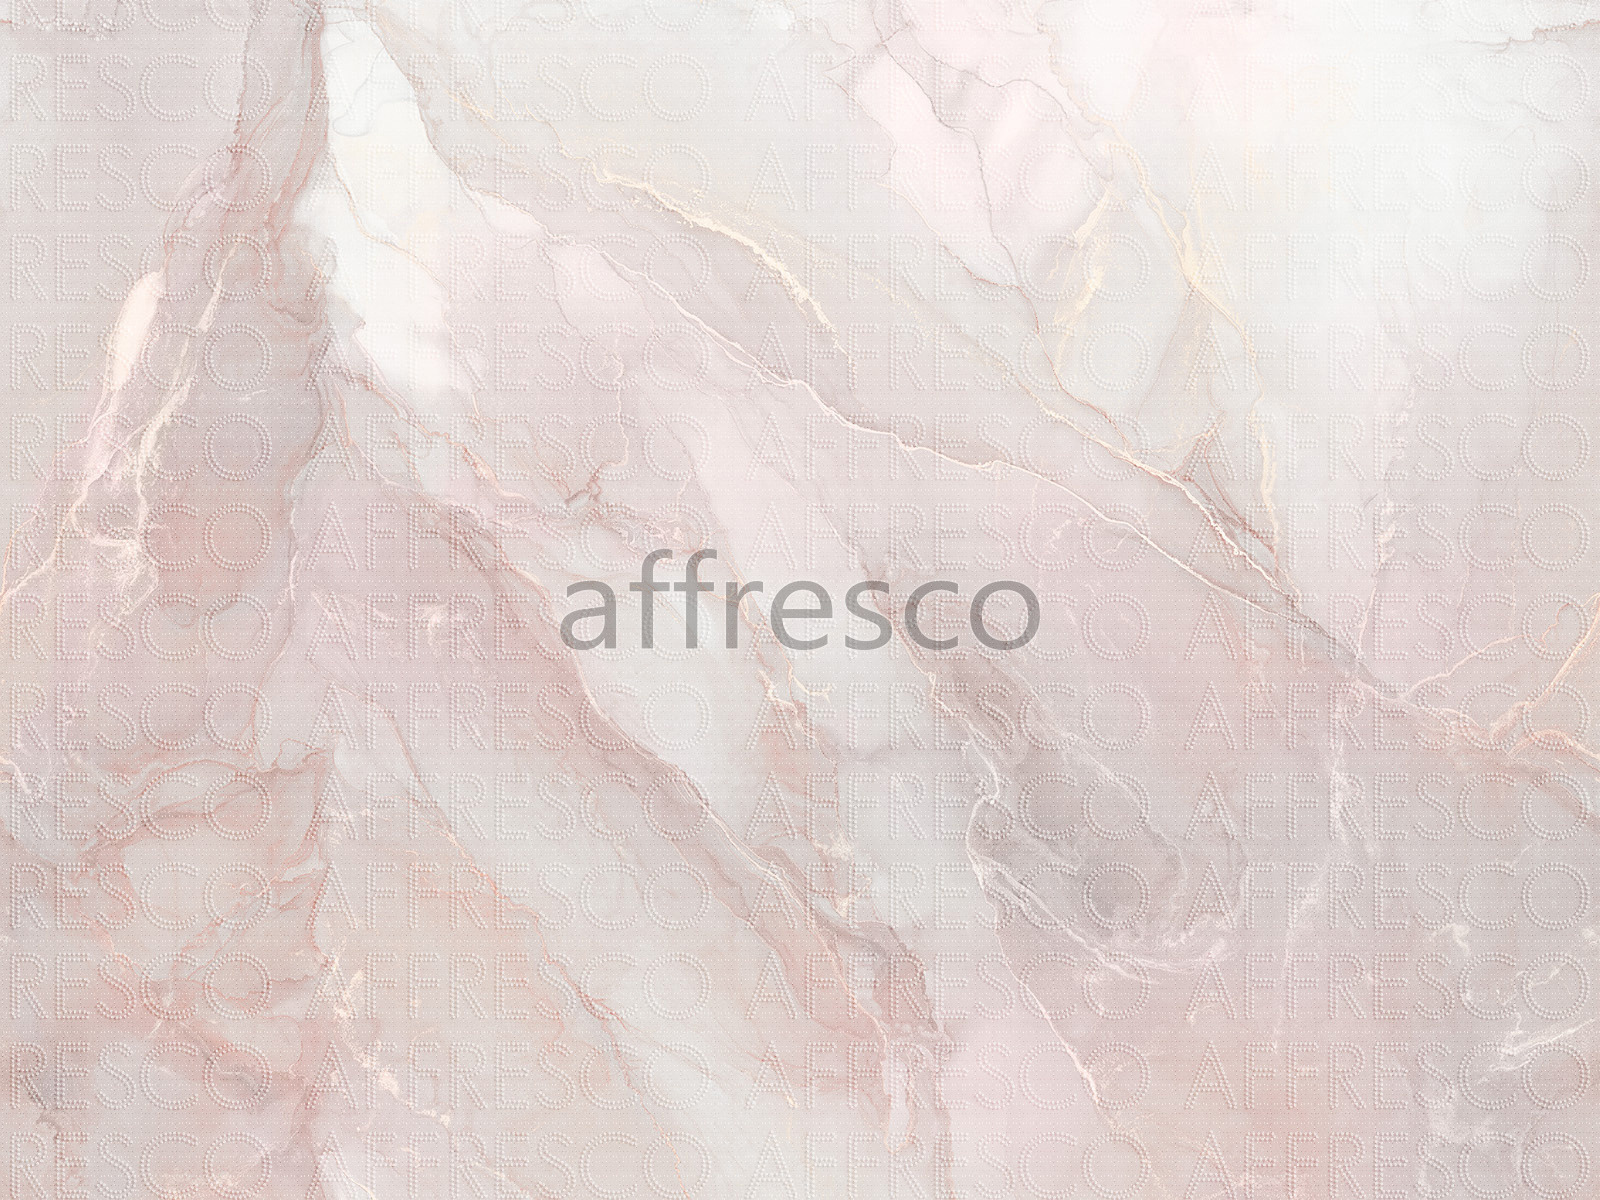 AF2105-COL5 | Emotion Art | Affresco Factory